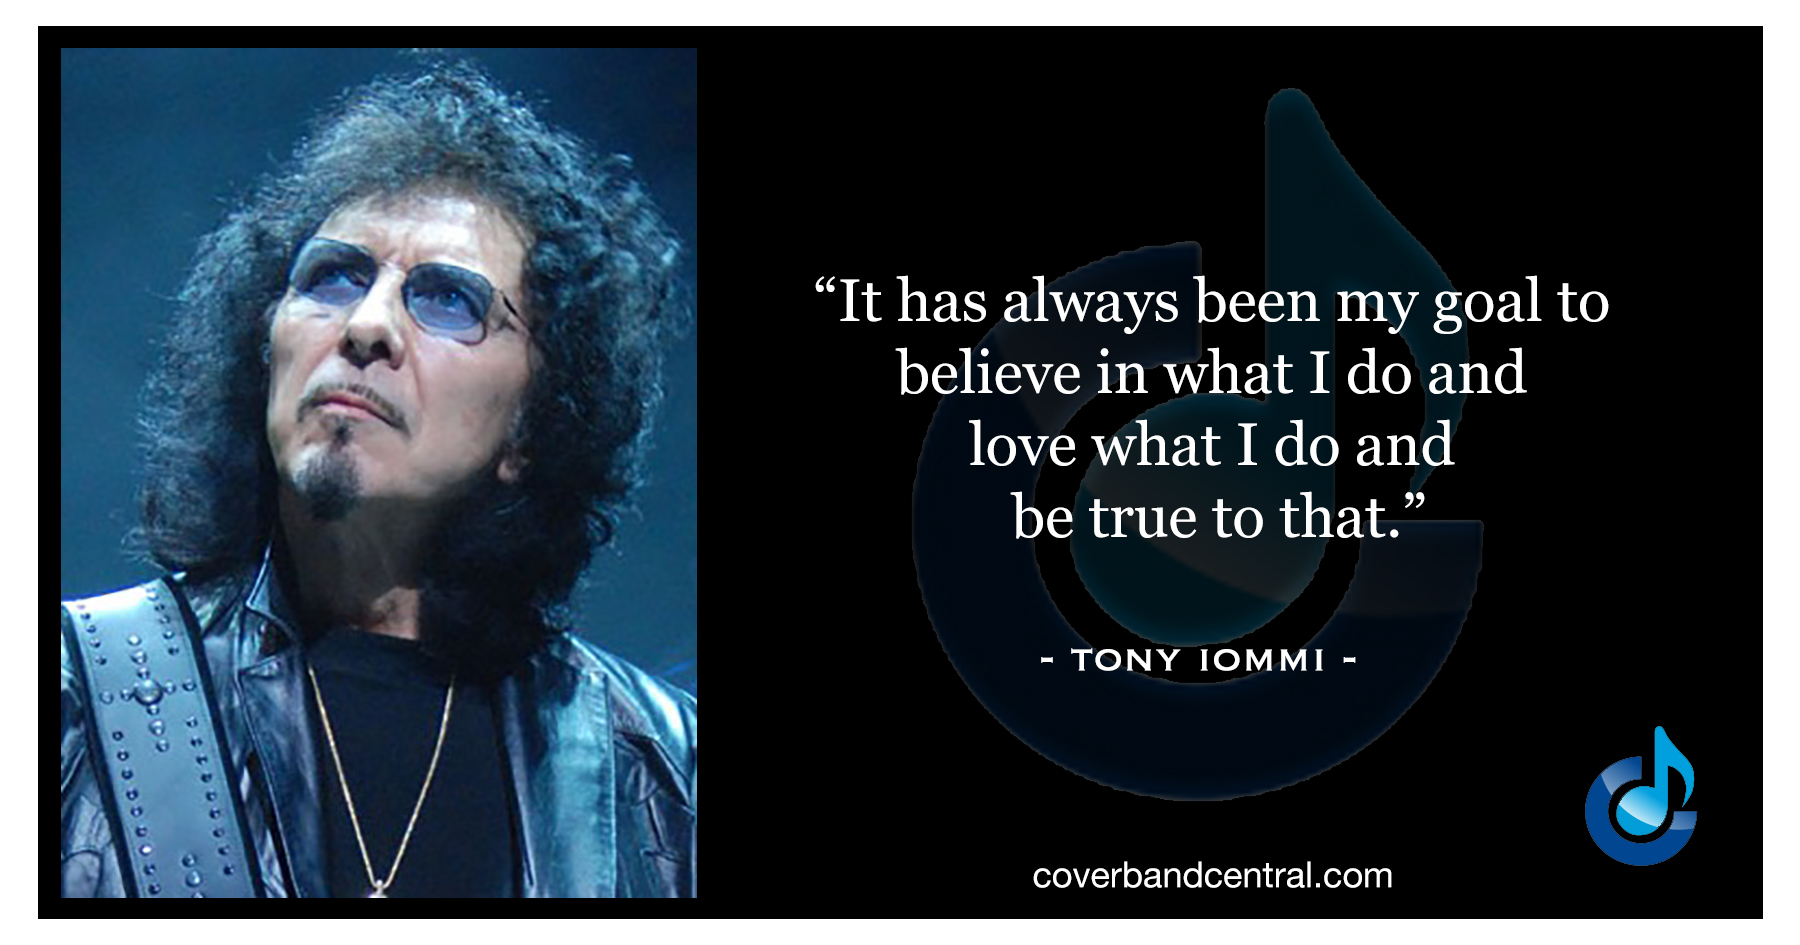 Tony Iommi quote